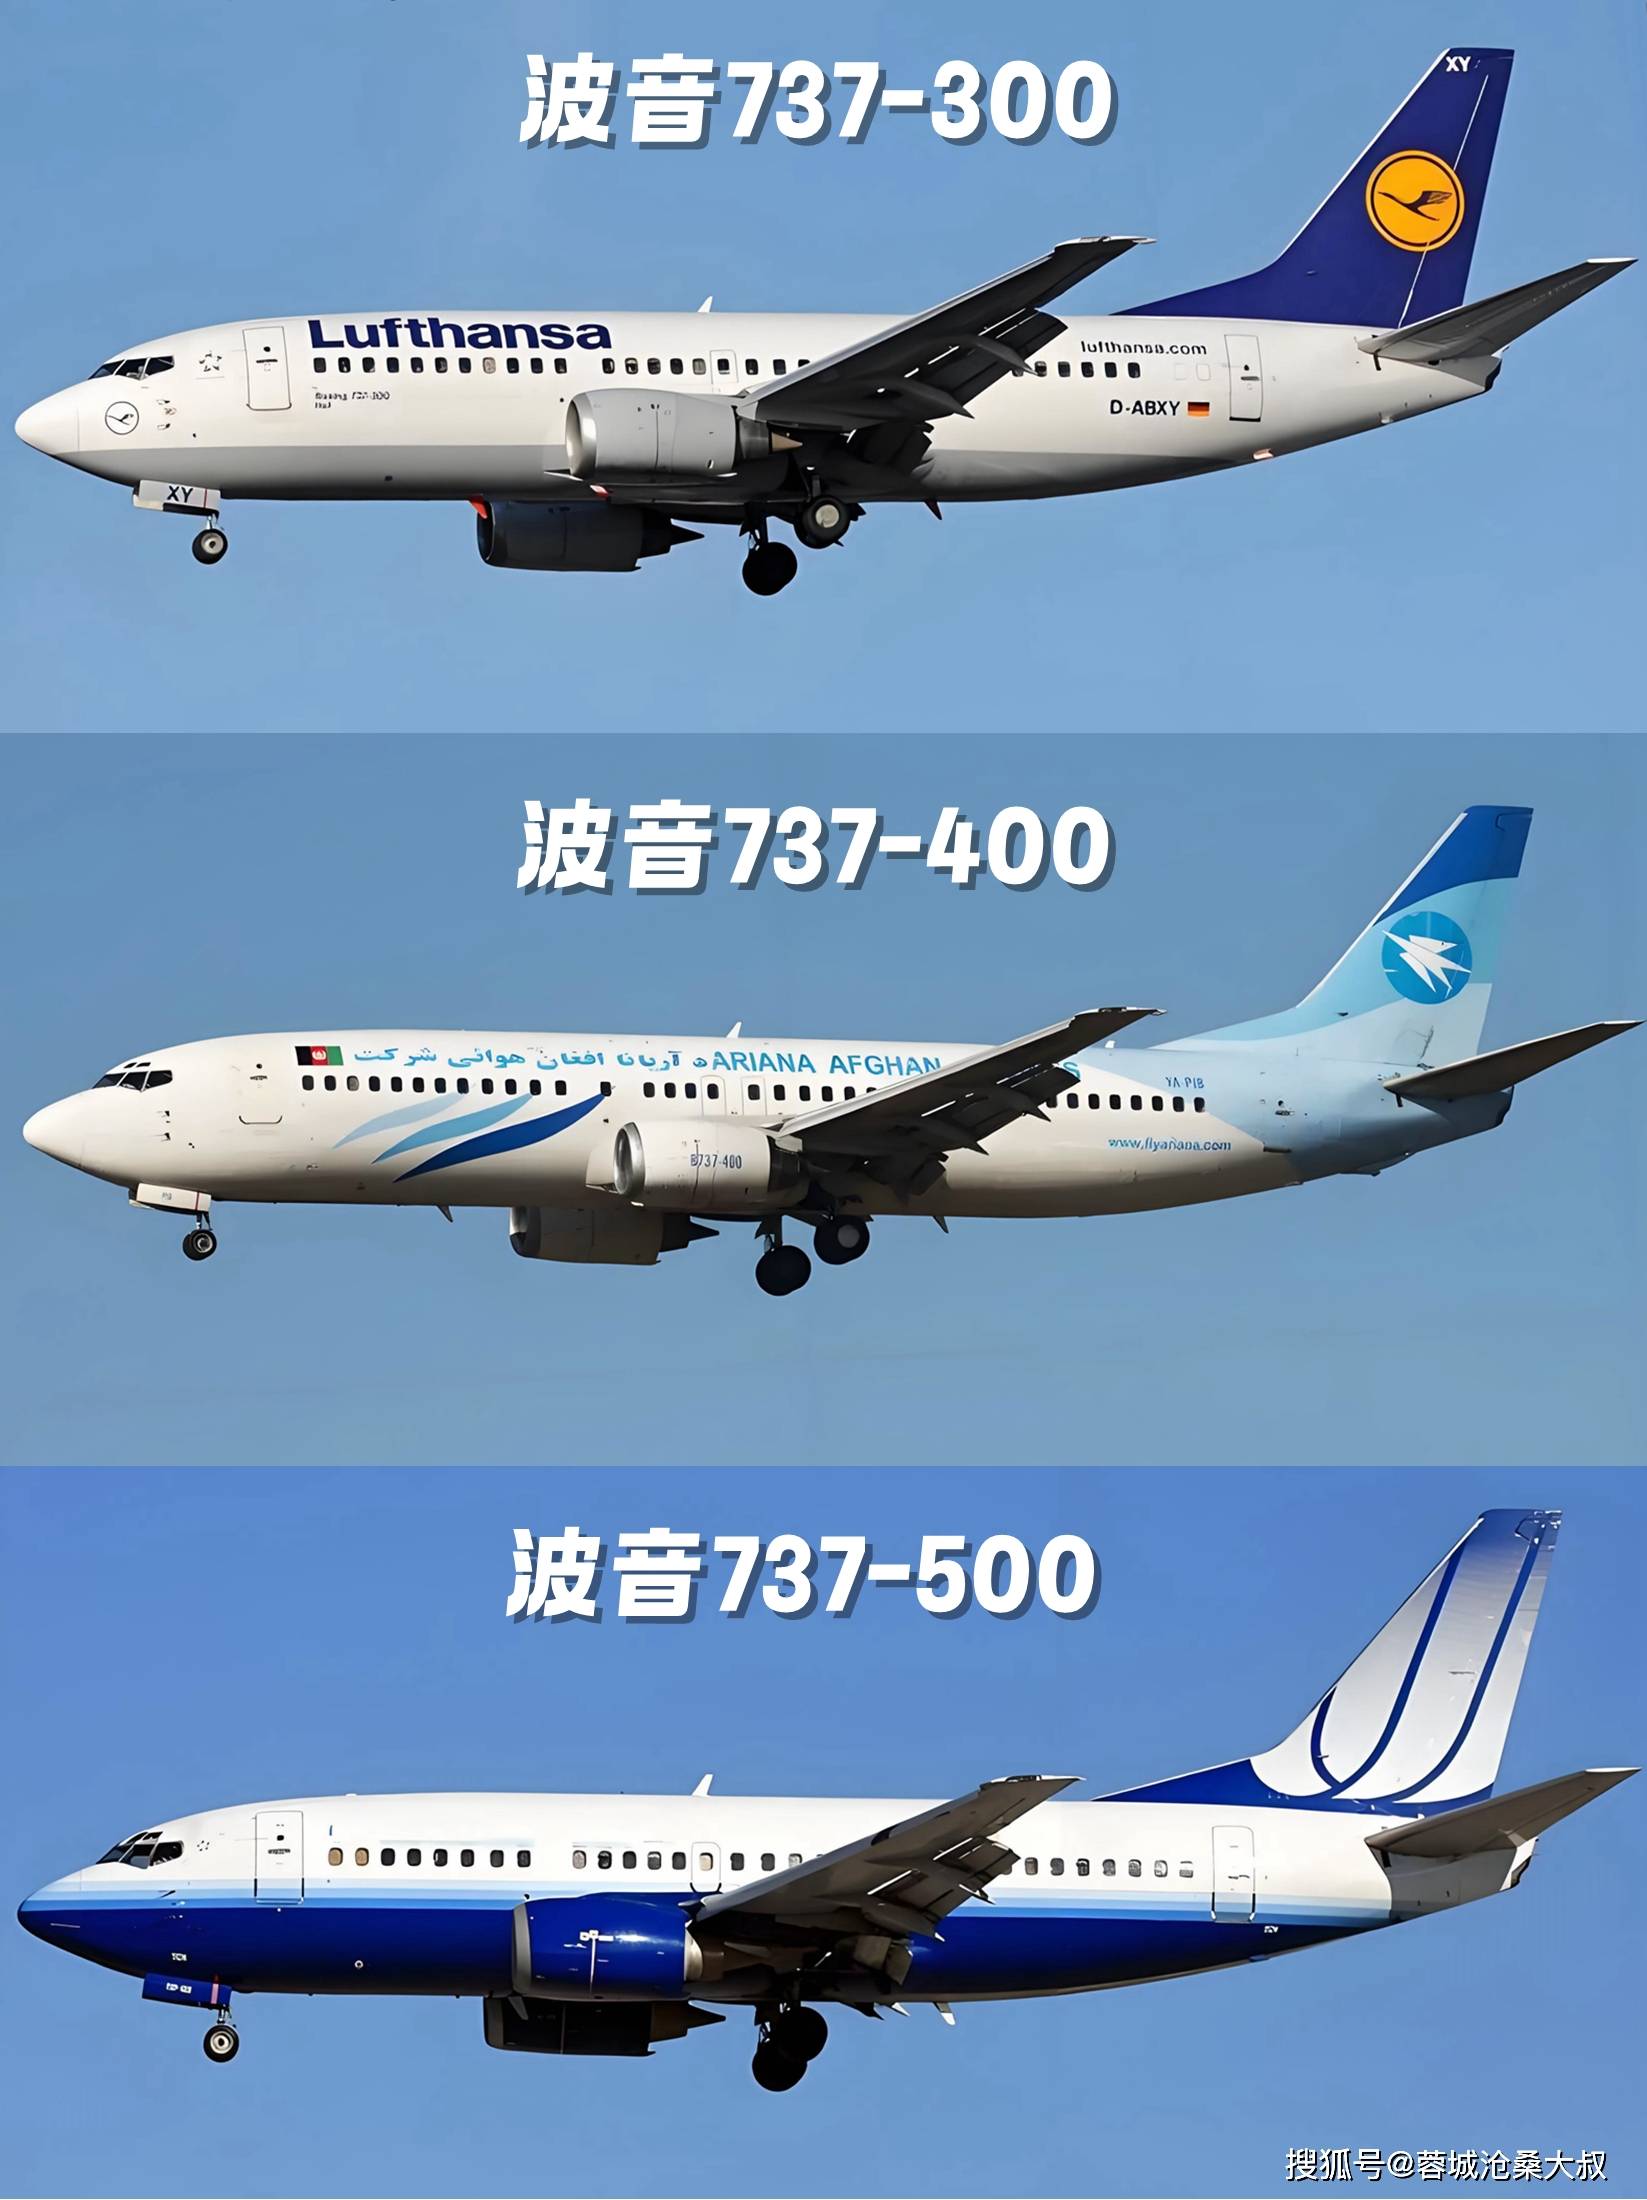 波音737家族全解析:四代机型11526架飞机!中国有多少架max?